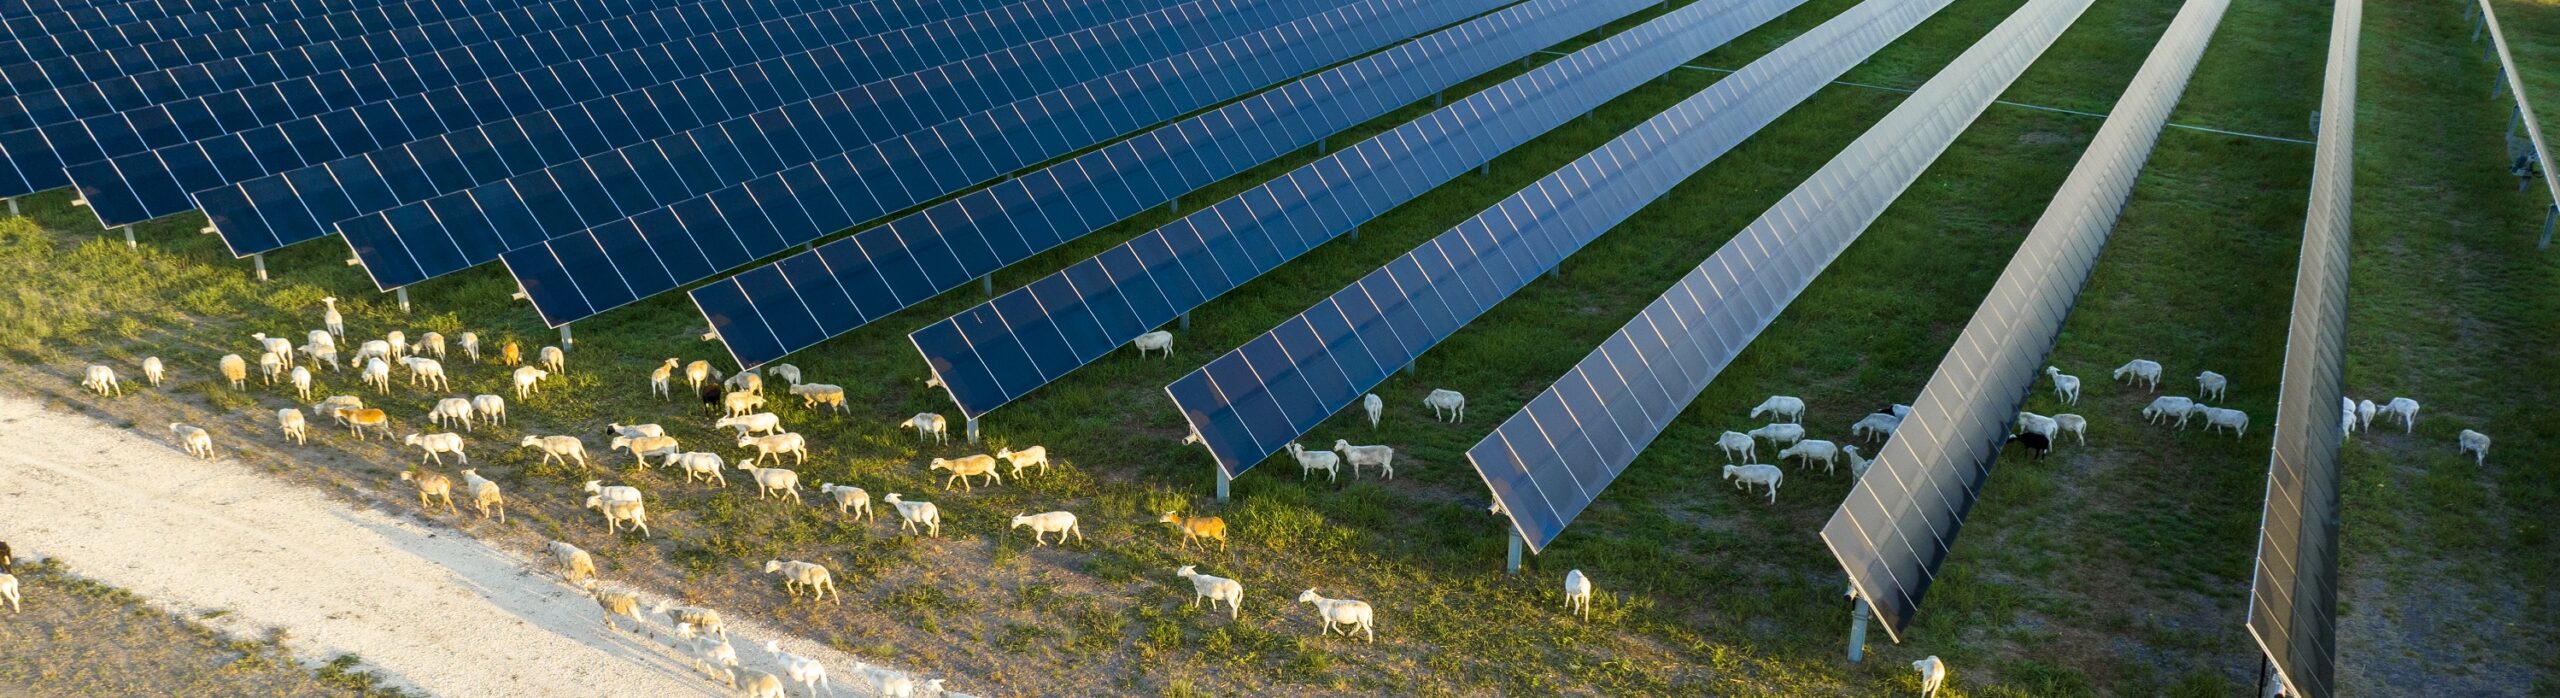 sheep grazing between solar panels